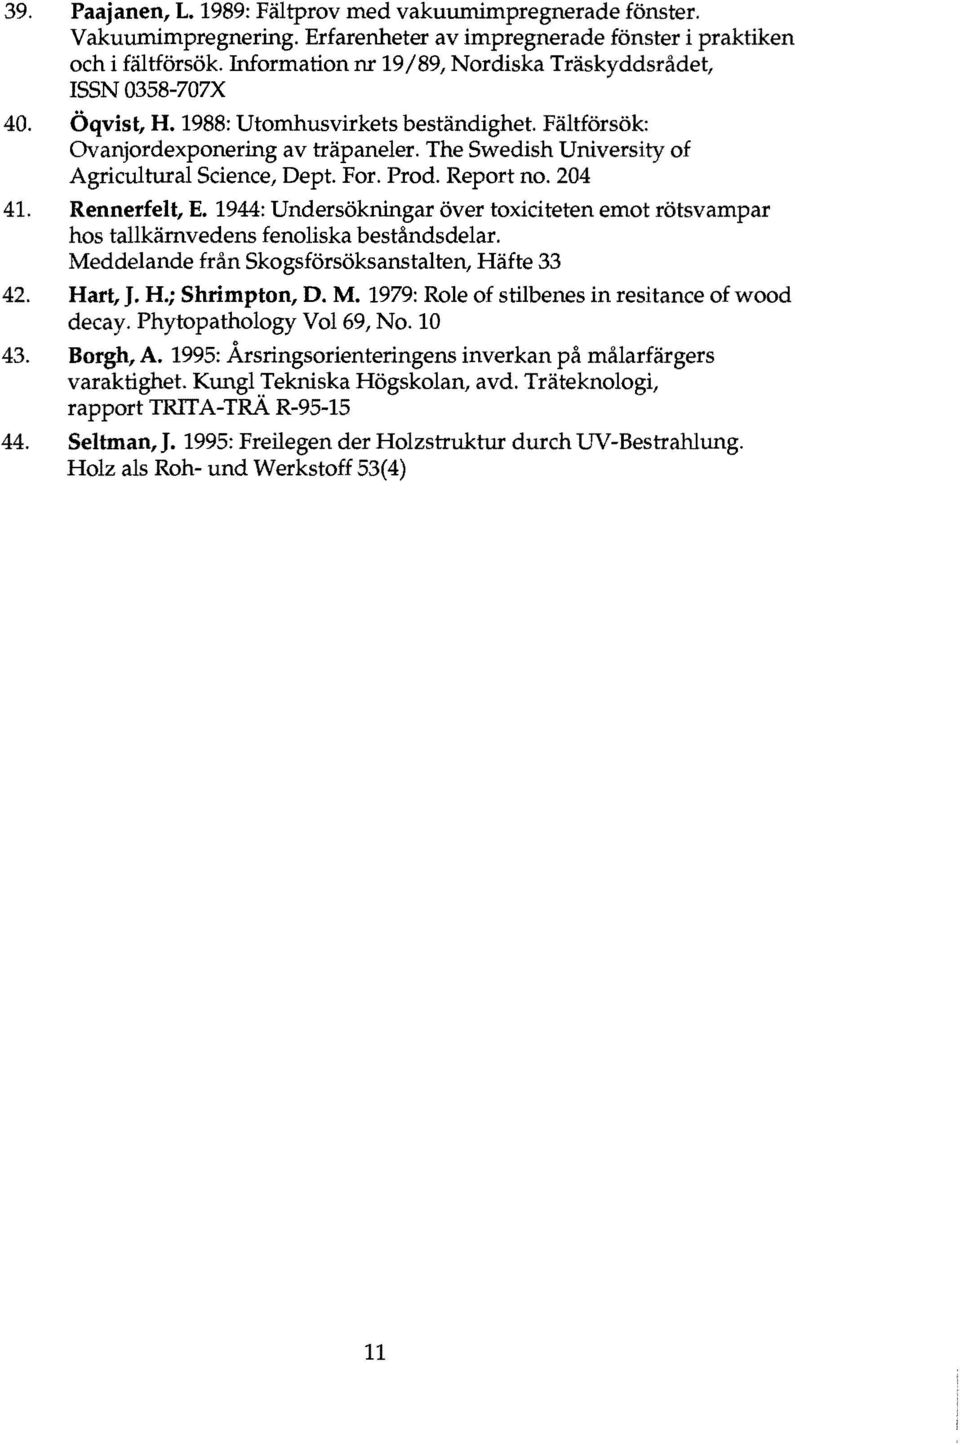 The Swedish University of Agricultural Science, Dept. For. Prod. Report no. 204 41. Rennerfelt, E. 1944: Undersokningar over toxiciteten emot rotsvampar hos tallkarnvedens fenoliska bestandsdelar.